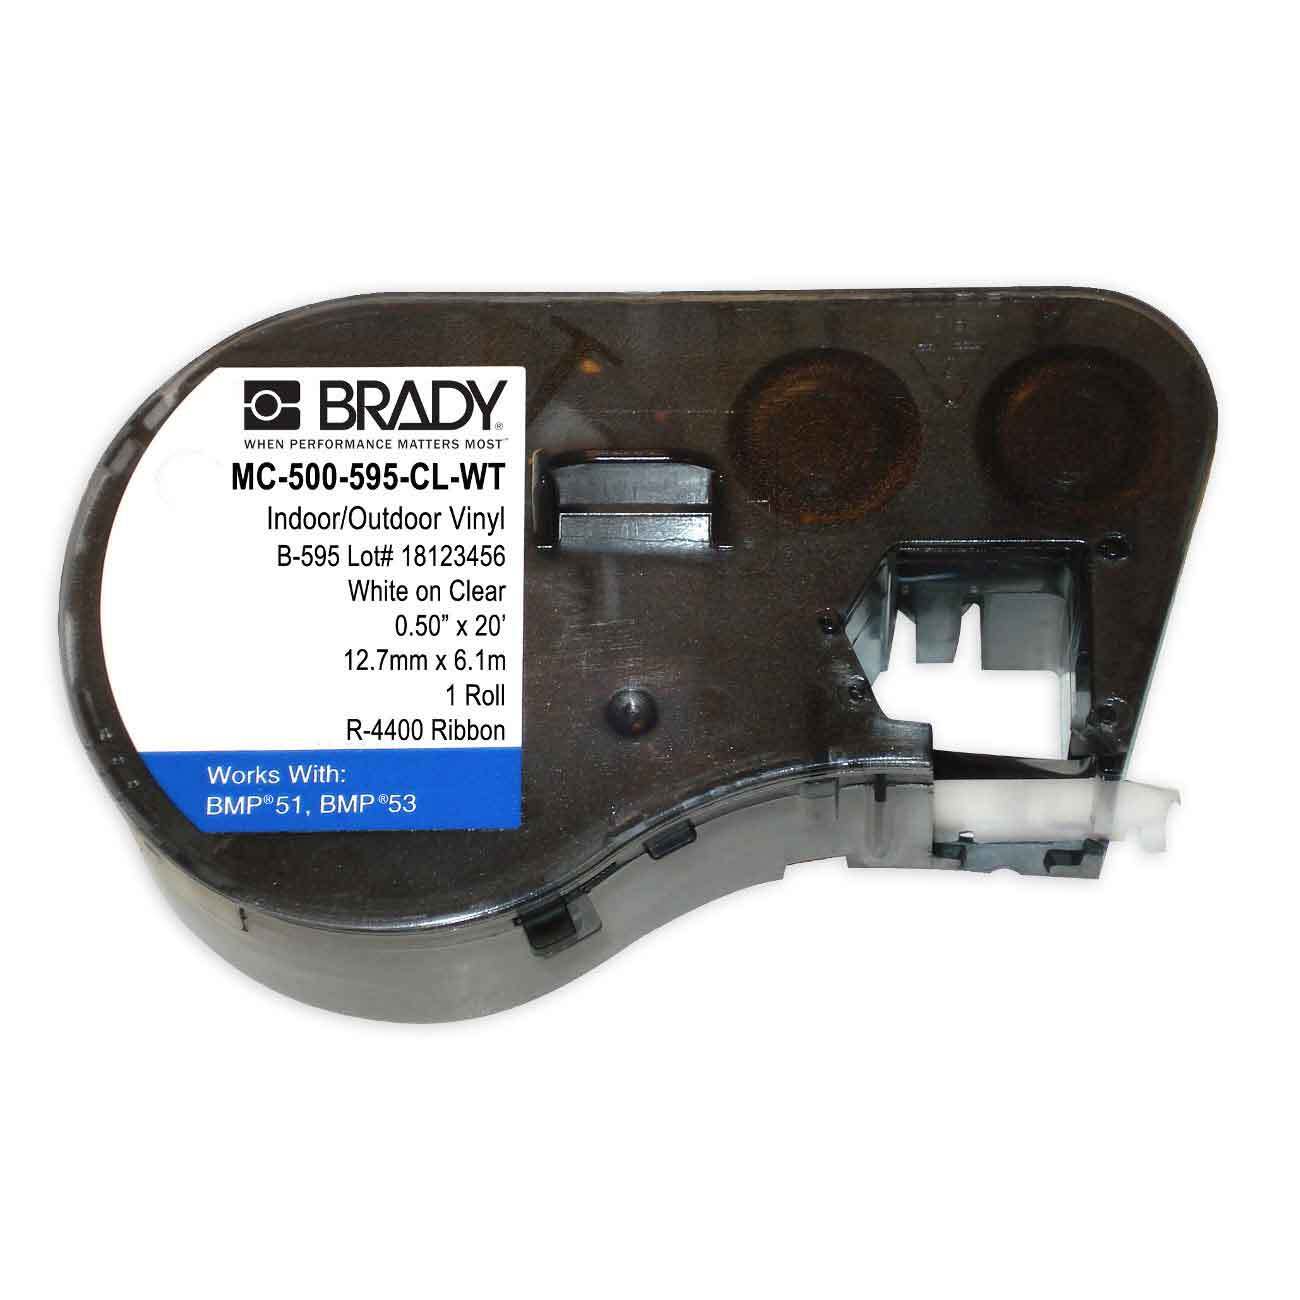 Brady MC-500-595-CL-WT